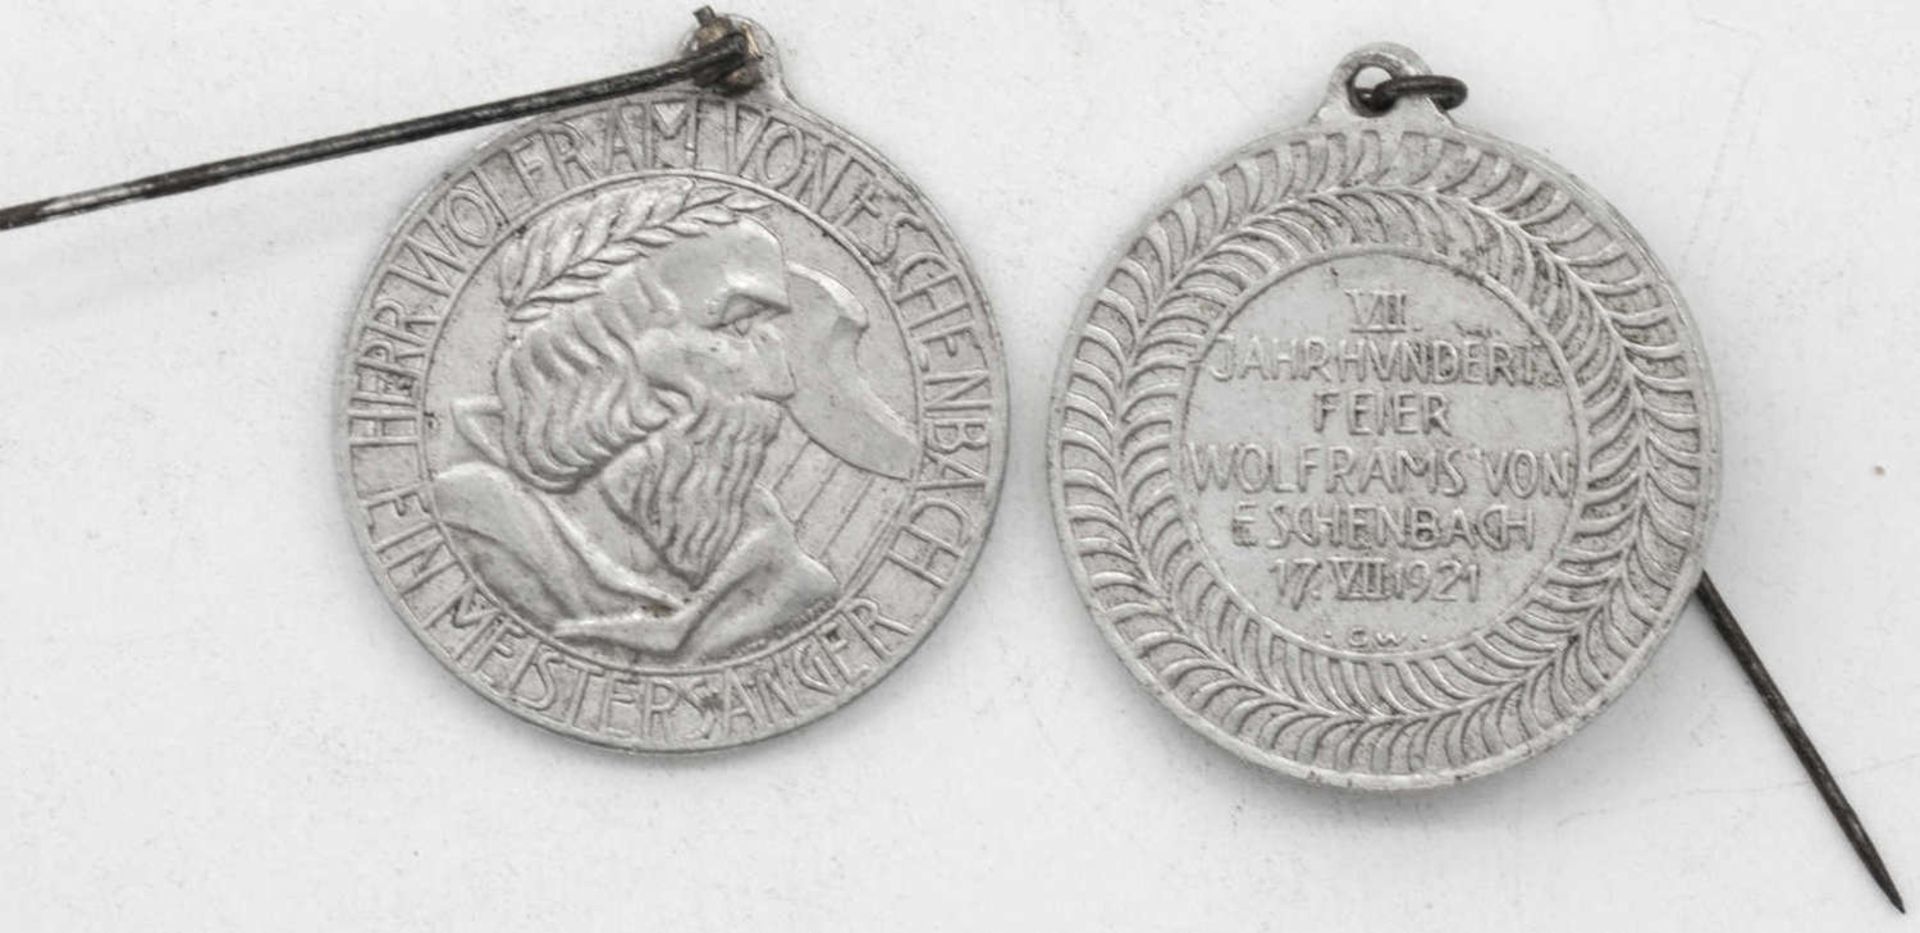 Zwei alte Orden "7. Jahrhundertfeier Wolframs von Eschenbach 17. VII. 1921. Aluminium.Two old medal - Bild 2 aus 2